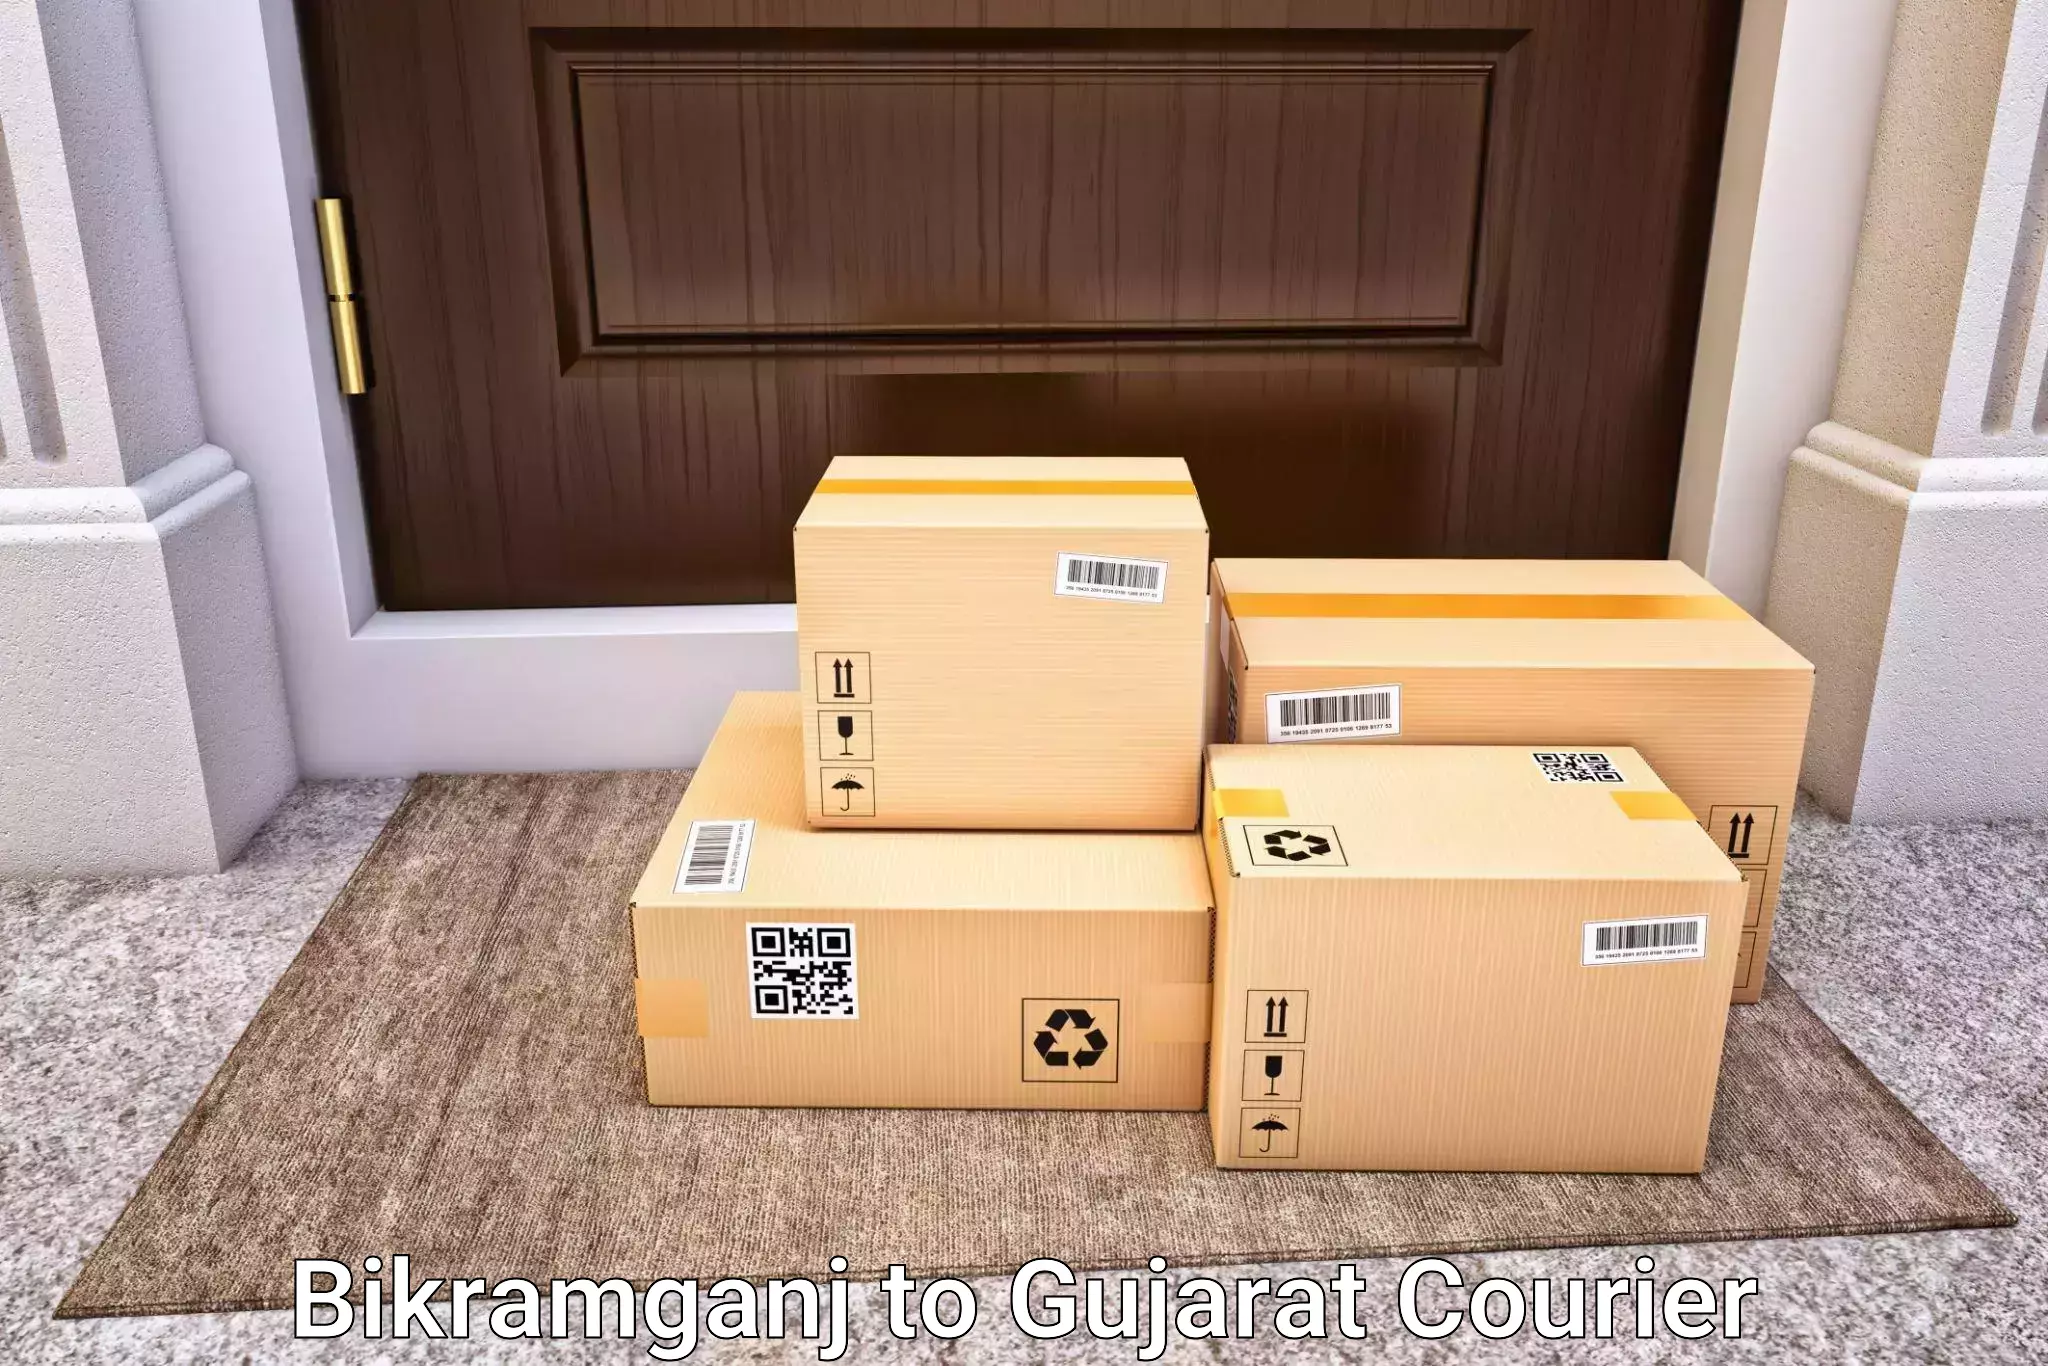 Customized luggage delivery in Bikramganj to Dhoraji